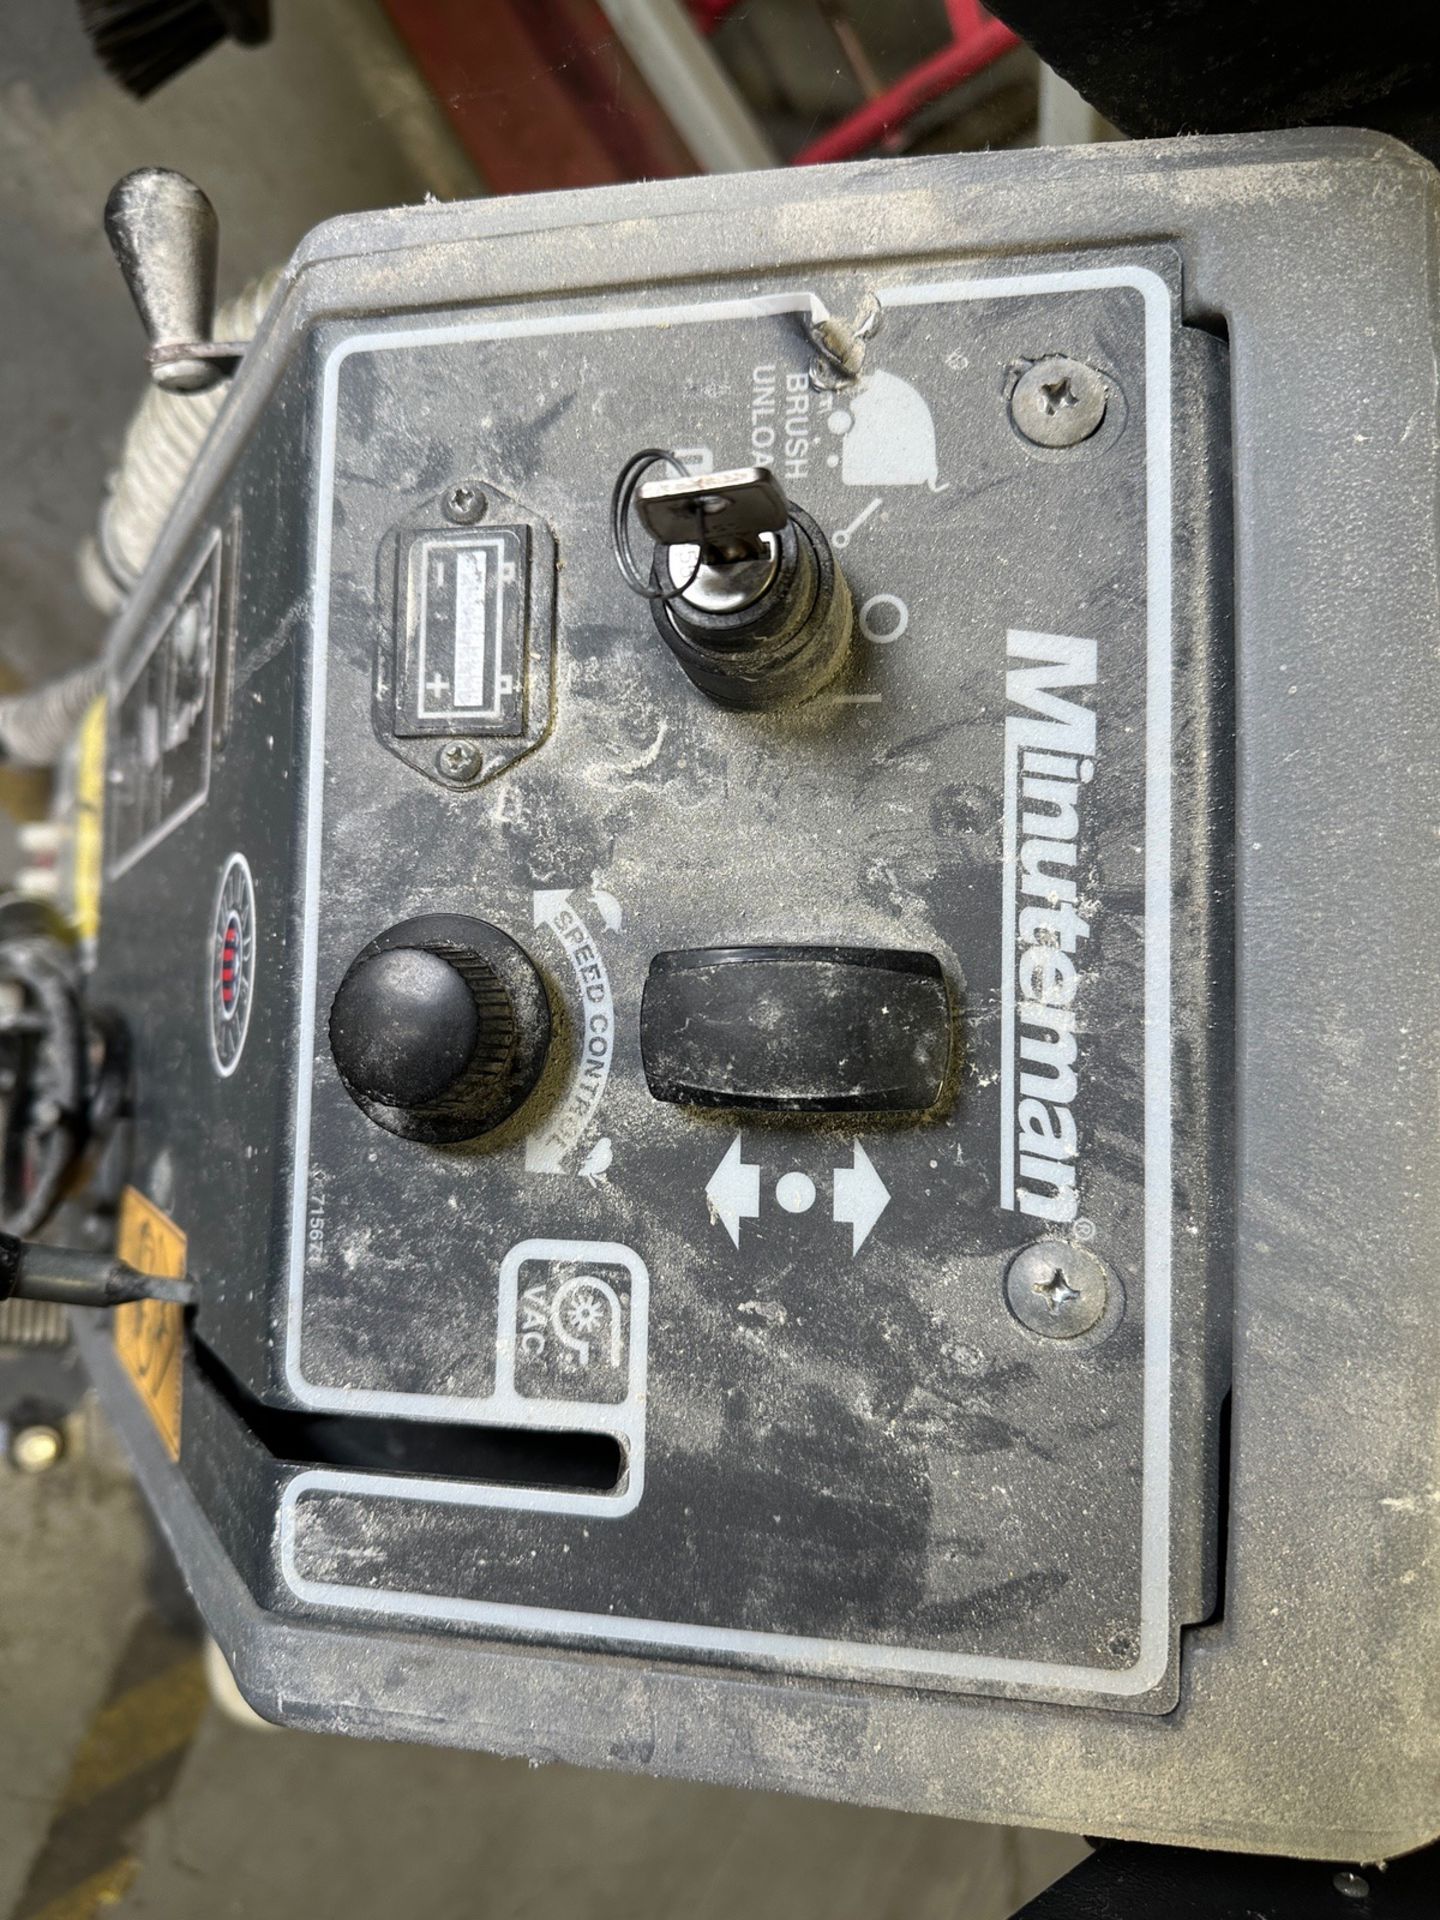 Minuteman E20 Floor Scrubber - Image 2 of 3